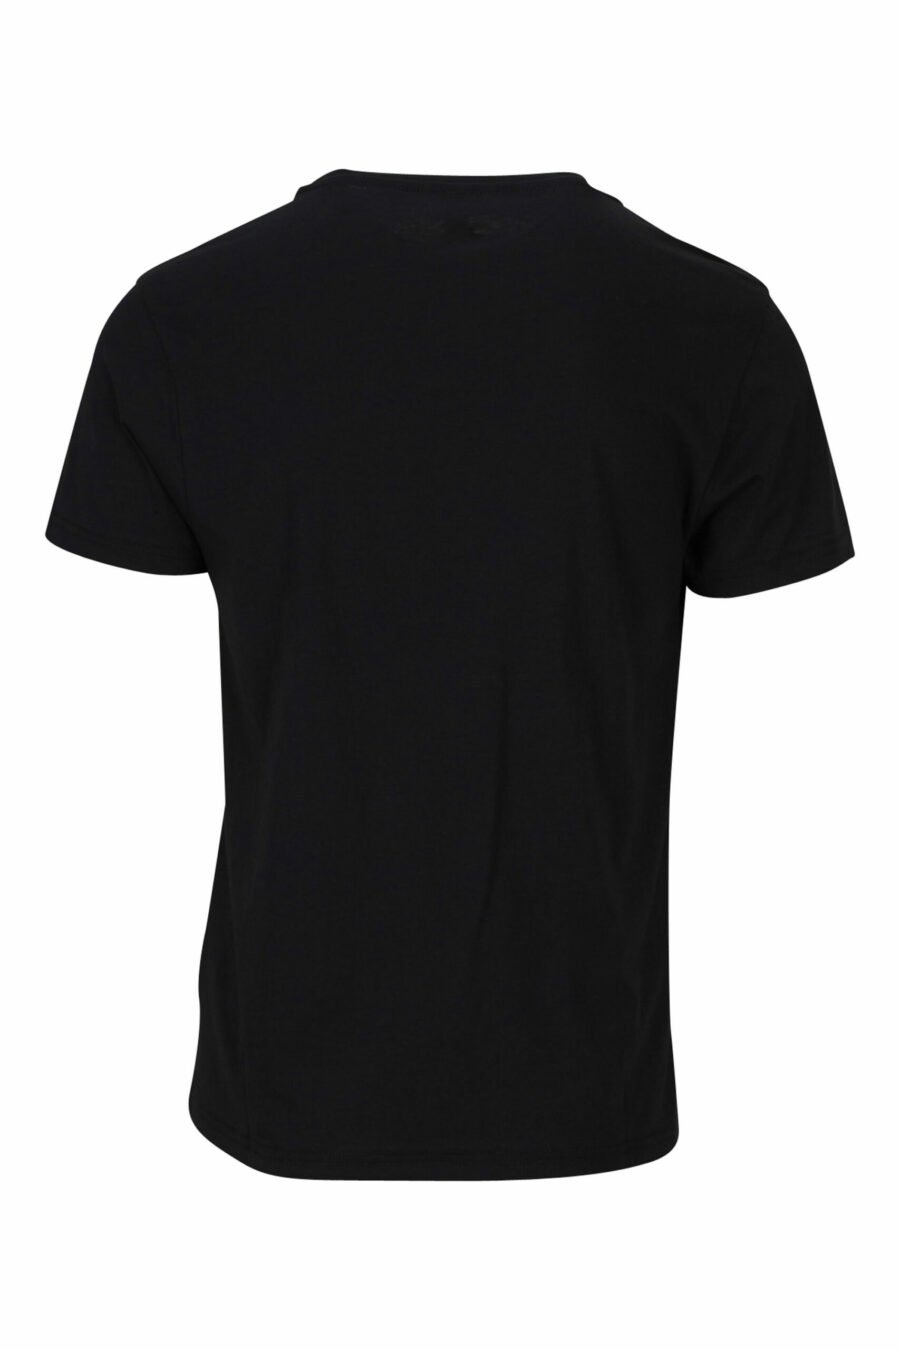 Camiseta negra con logo monocromático en cinta en hombros - 889316992724 1 scaled